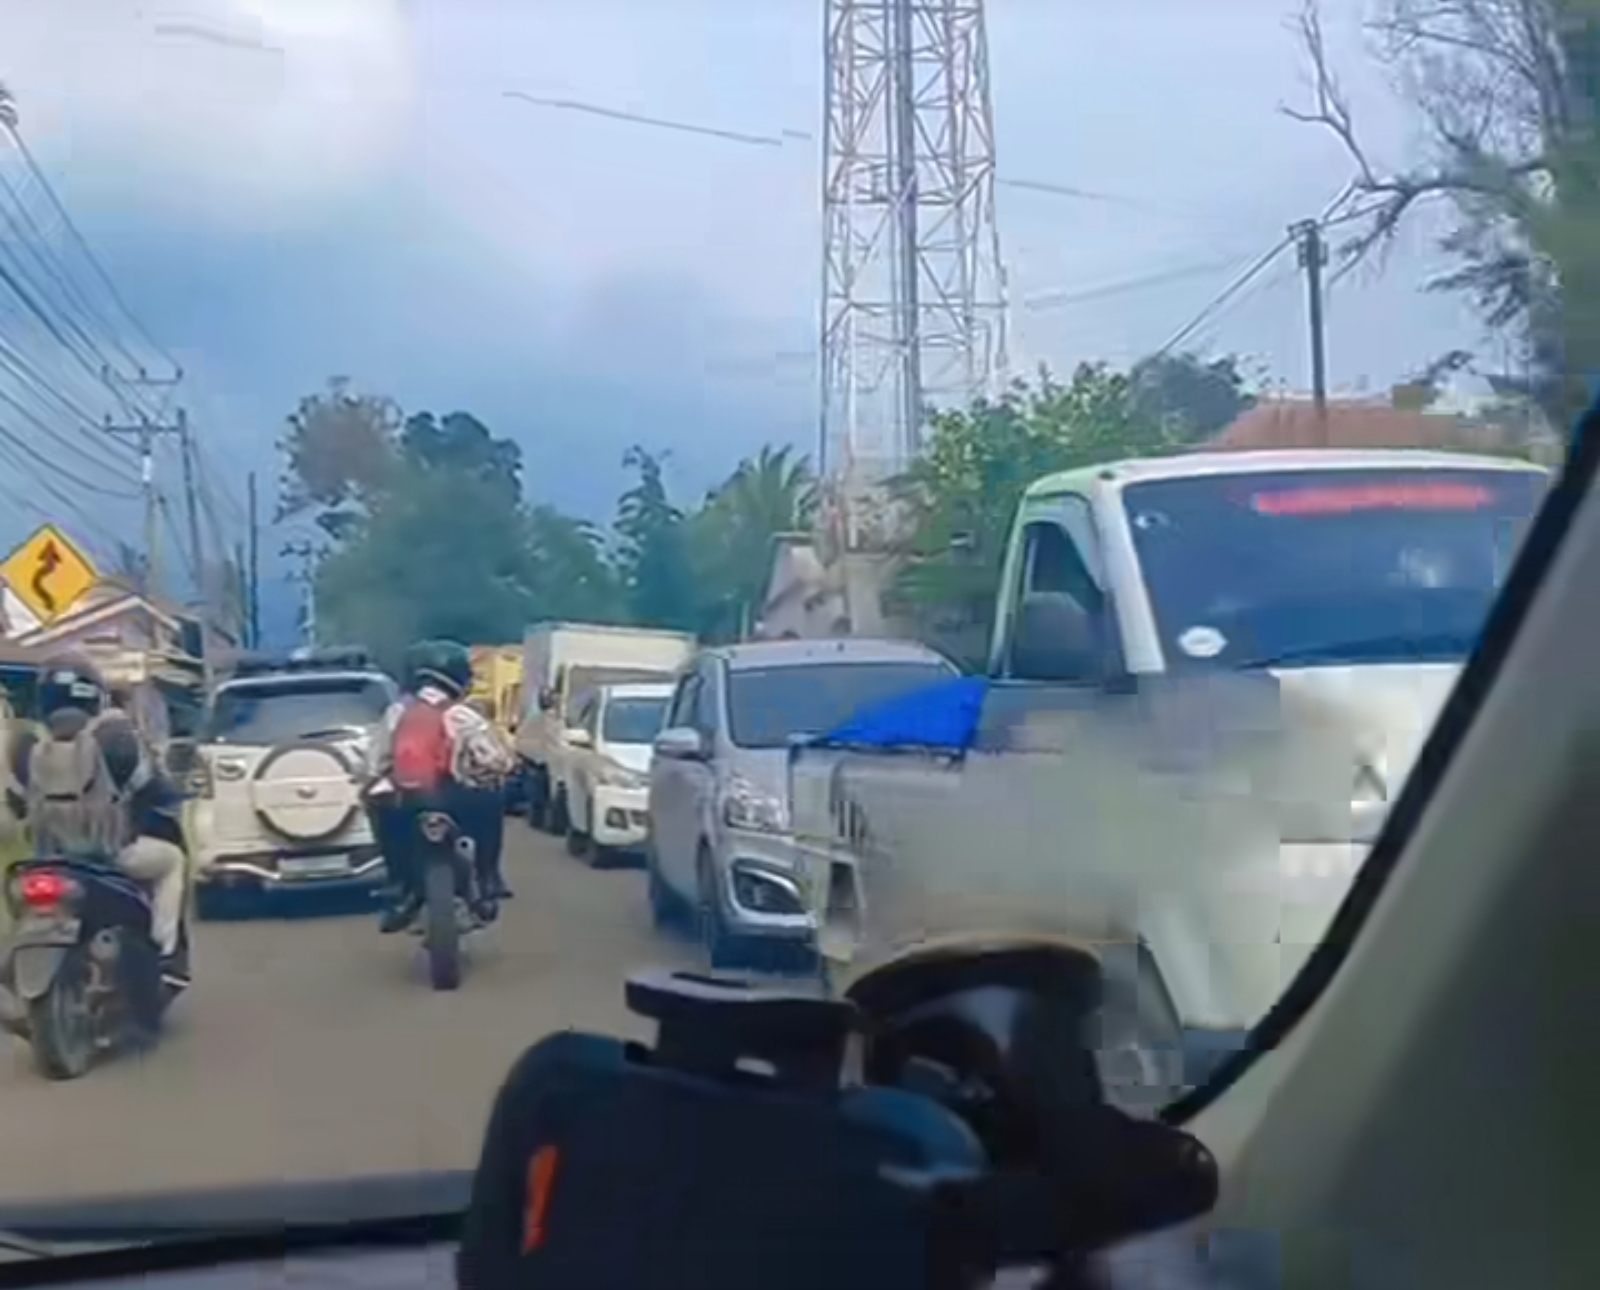 Jalan Rusak di Cigasong - Cikijing Majalengka Diperbaiki, Wagub Uu Malah Minta Maaf, Oh Ternyata